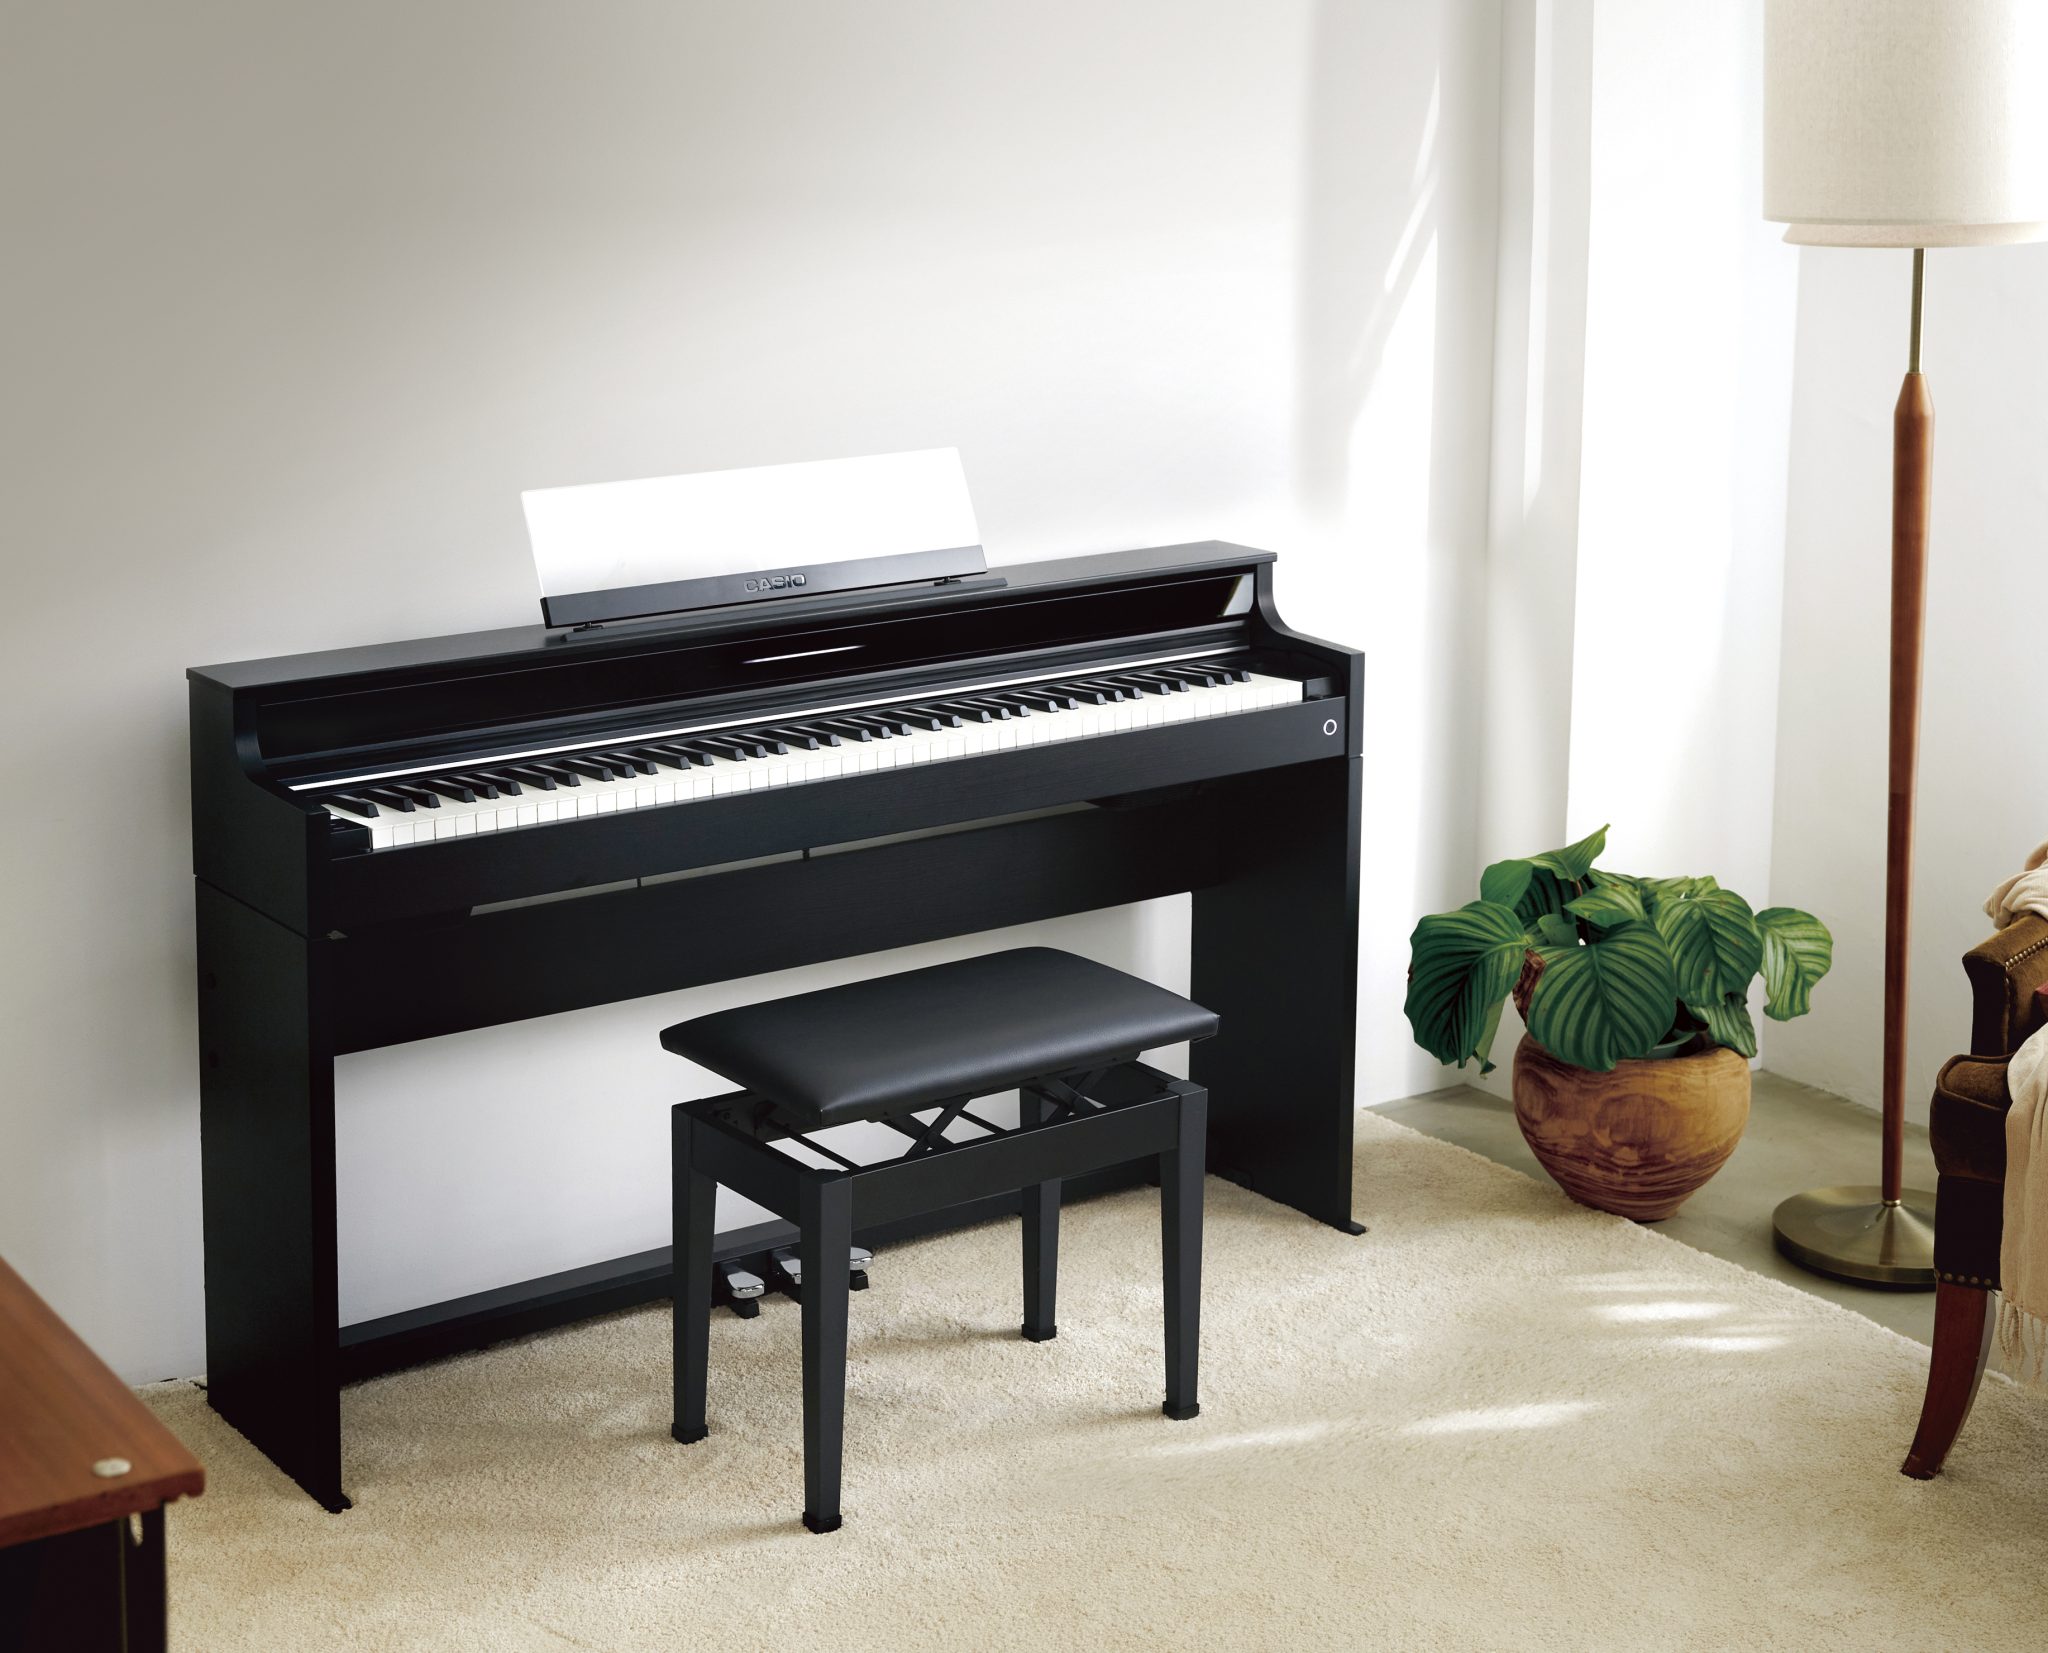 島村楽器大分店に、CASIO(カシオ)の電子ピアノ、「AP-S5000GP/S」が展示がスタート致しました！ 木製ハイブリッド鍵盤の本格的タッチとピアノらしいデザインをコンパクトなサイズに収め、驚きのコストパフォーマンスを実現した2024年発売のカシオの最新モデルです。カシオ×島村楽器 コラボレーシ […]